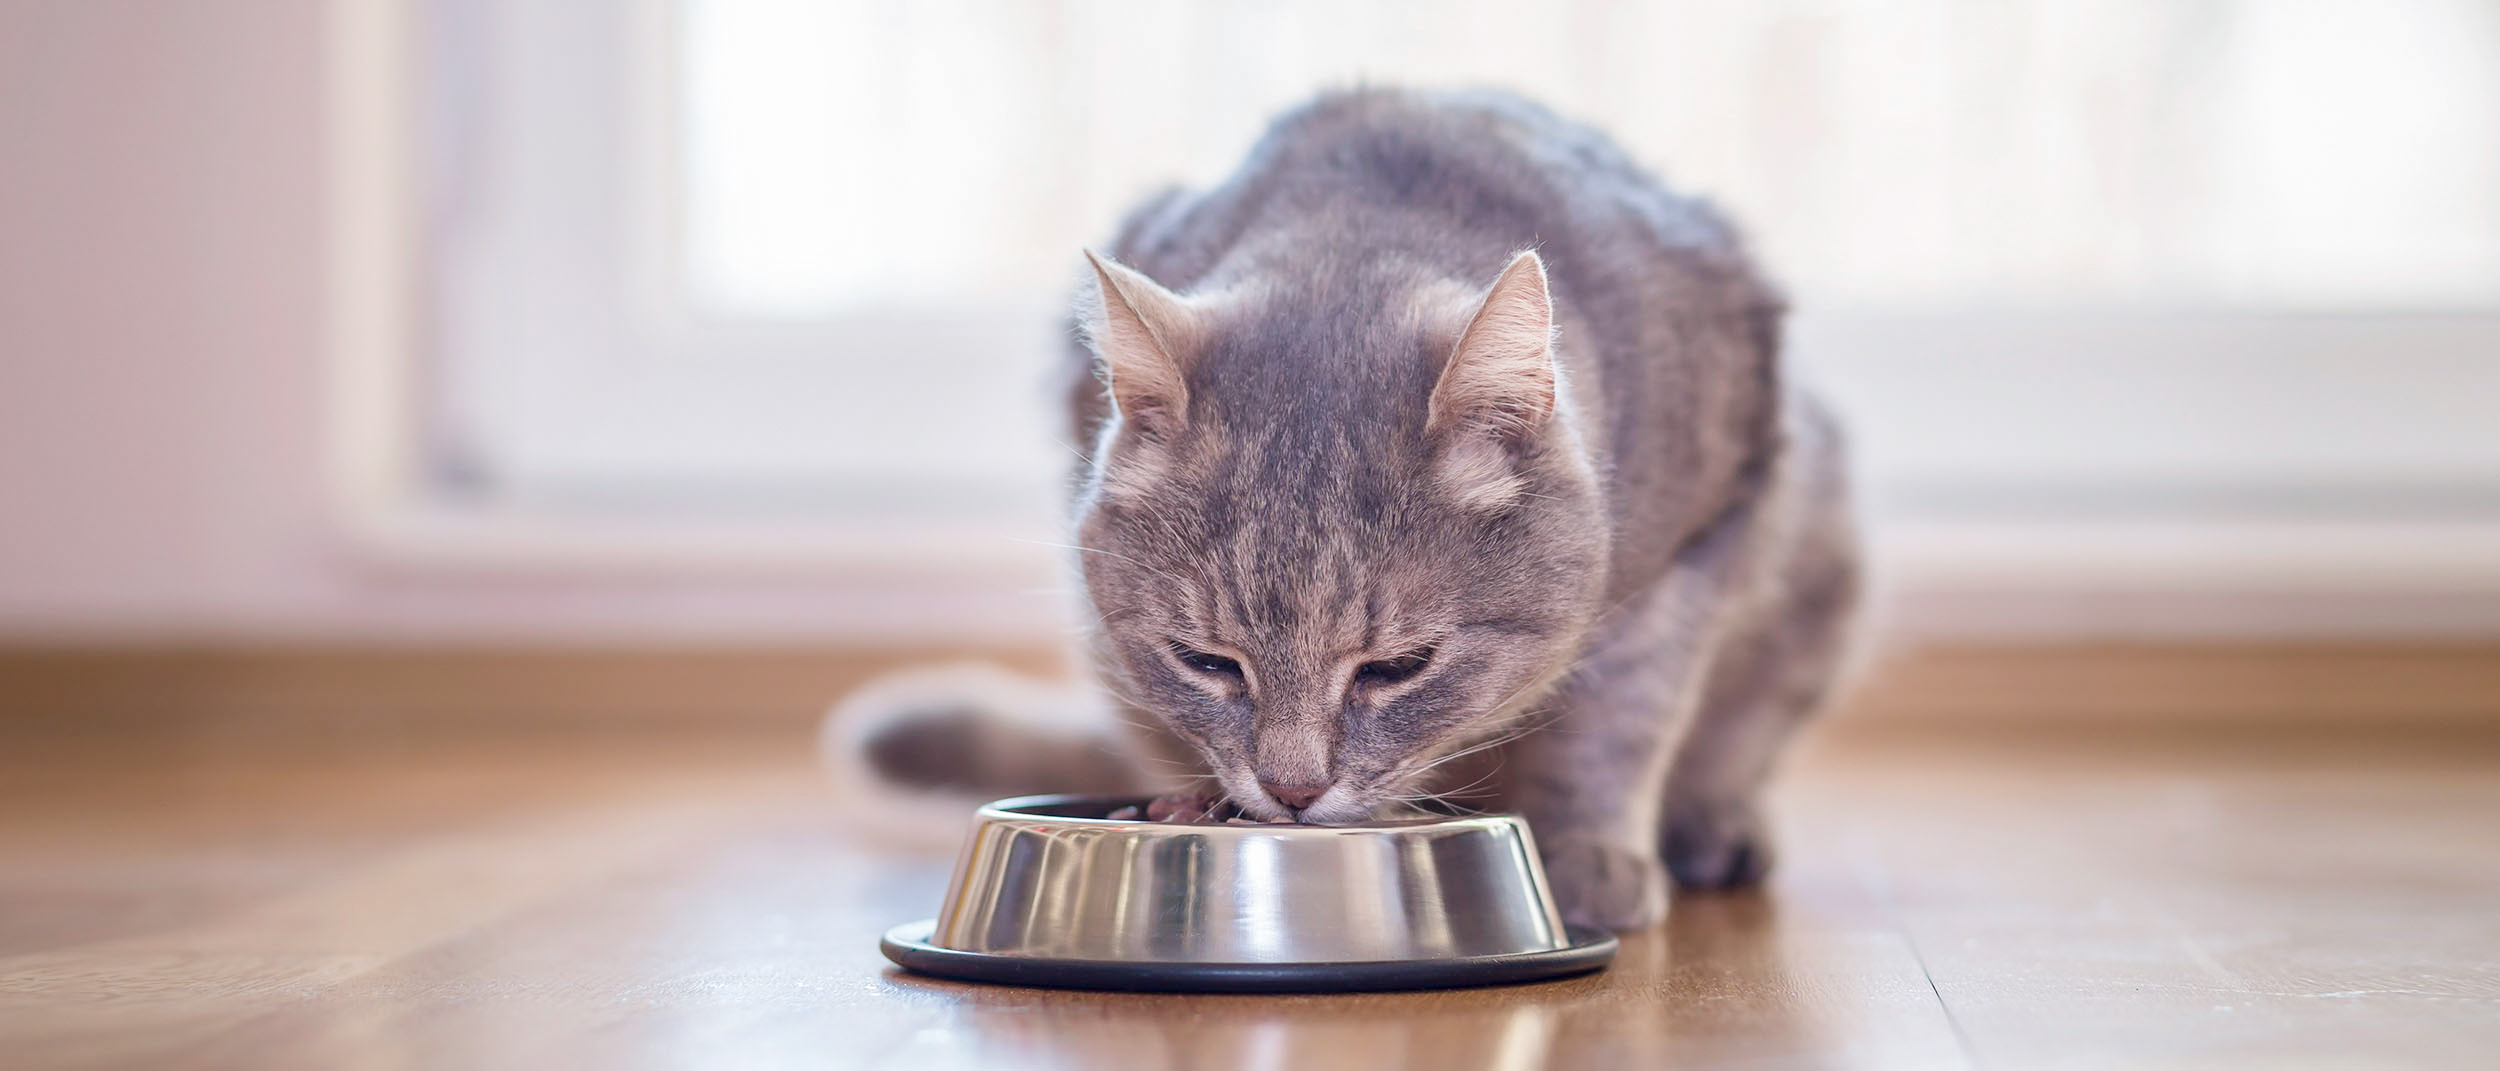 Voksen katt som sitter innendørs og spiser fra en sølvfarget skål.